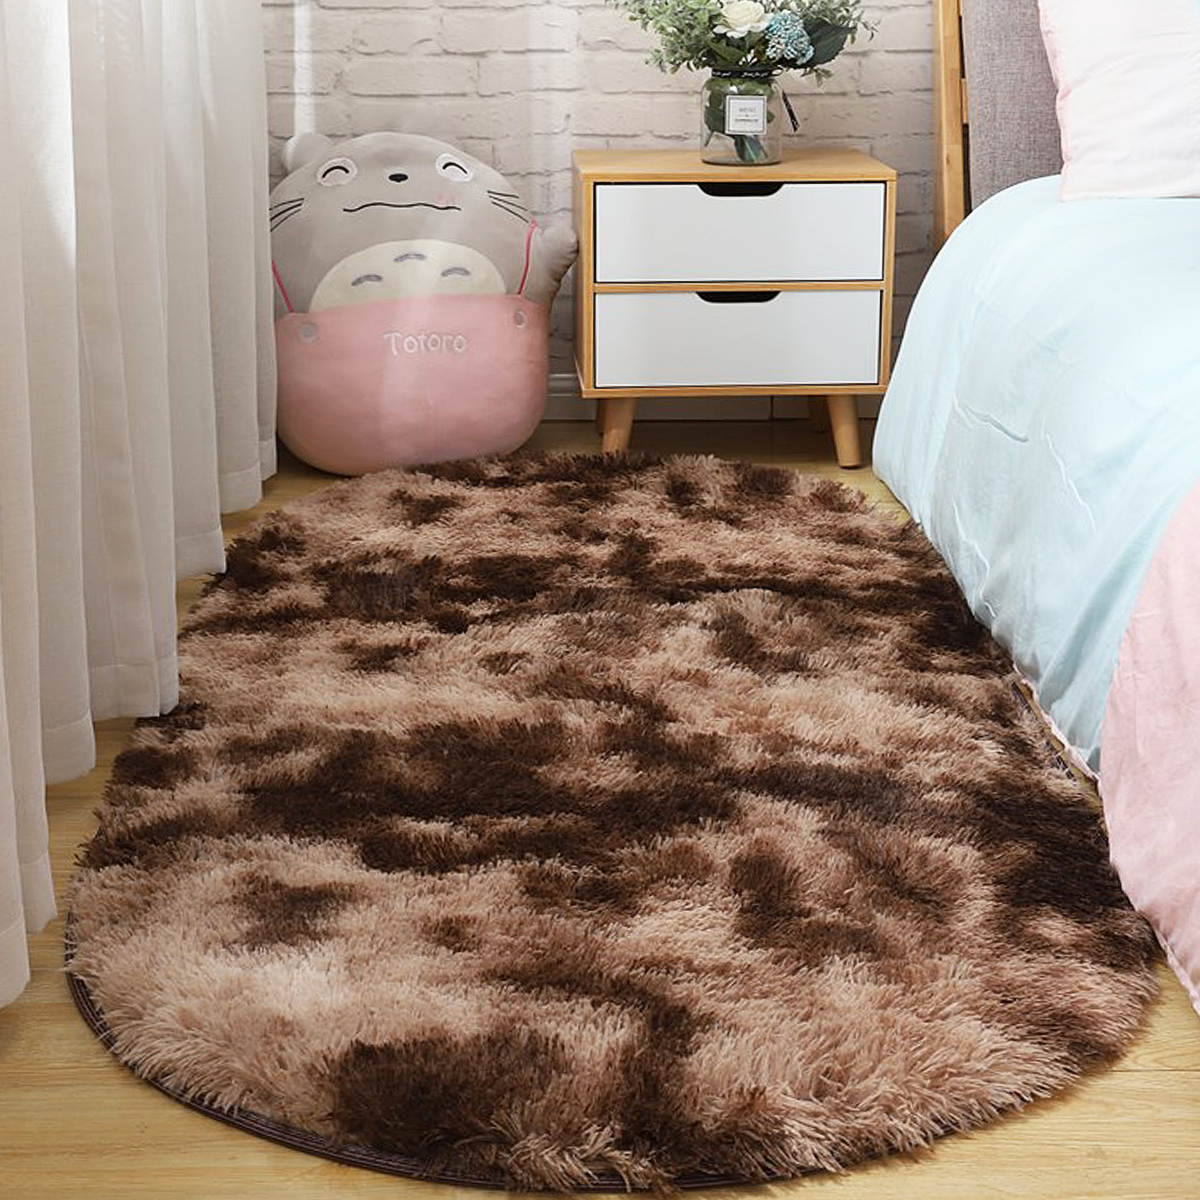 Long-Variegated-Tie-dye-Gradient-Carpet-Living-Room-Bedroom-Bedside-Blanket-Coffee-Table-Cushion-Ful-1730424-1